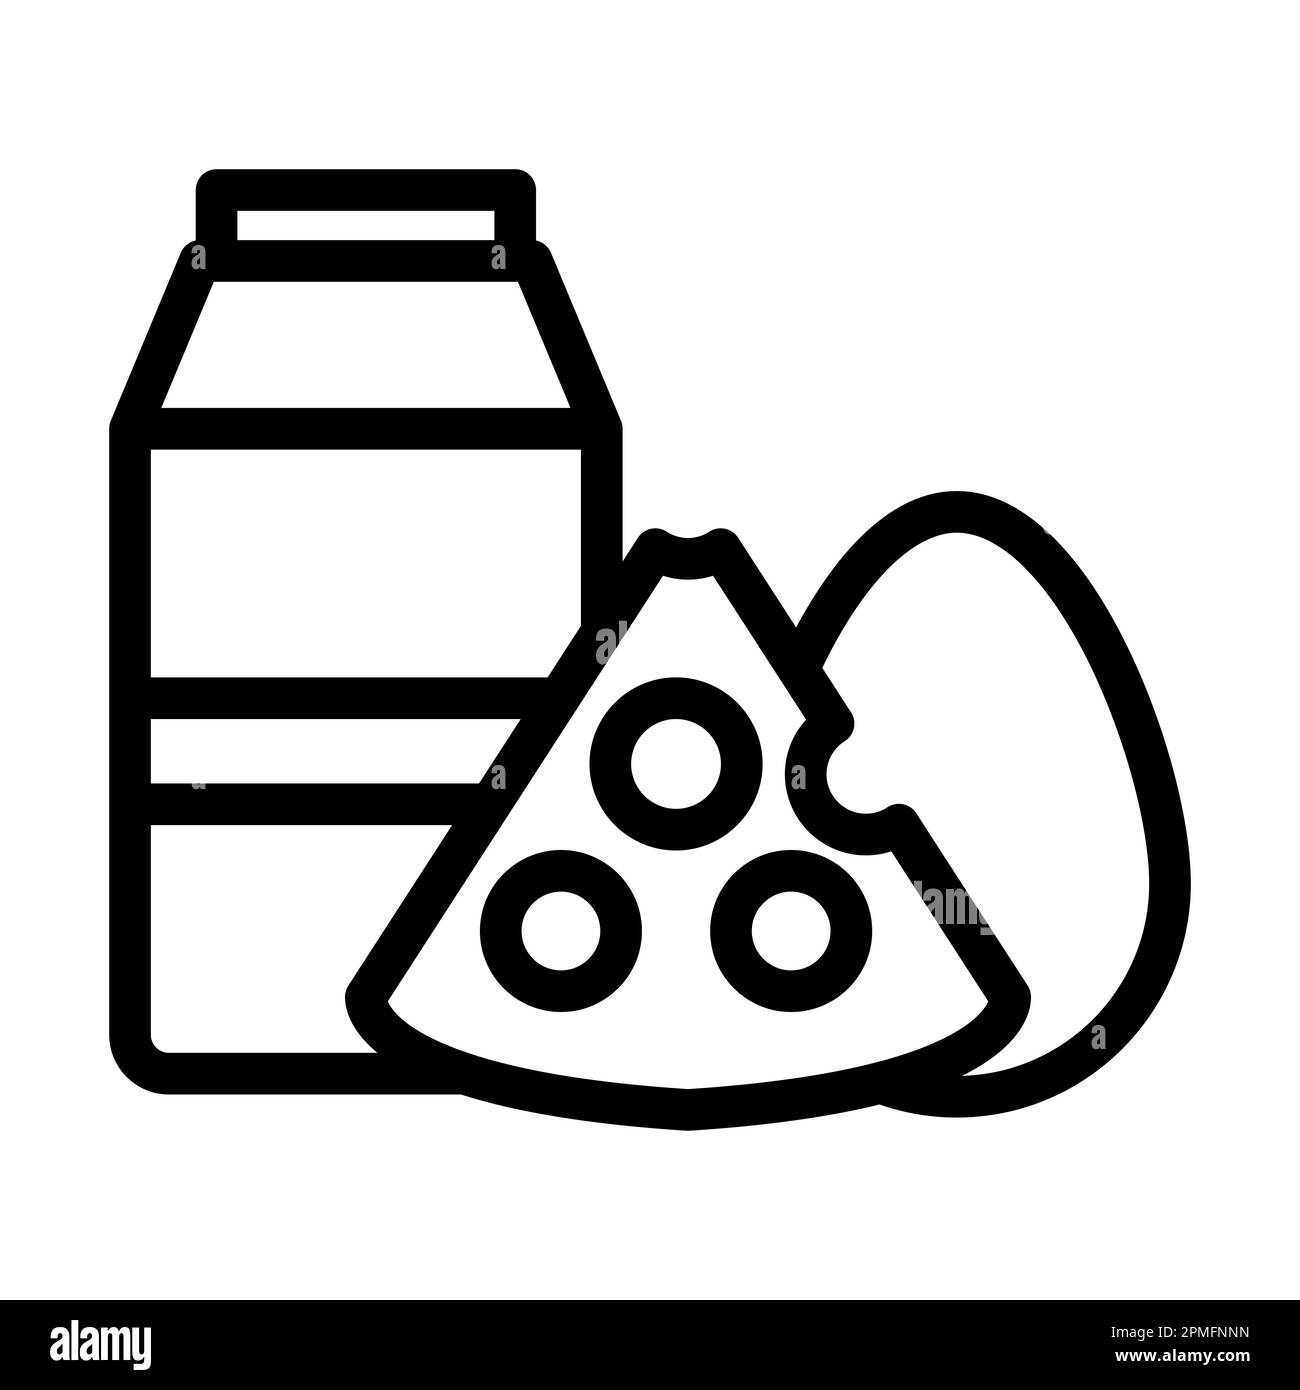 Dickliniensymbol Für Milchprodukte Für Den Privaten Und Gewerblichen Gebrauch. Stockfoto